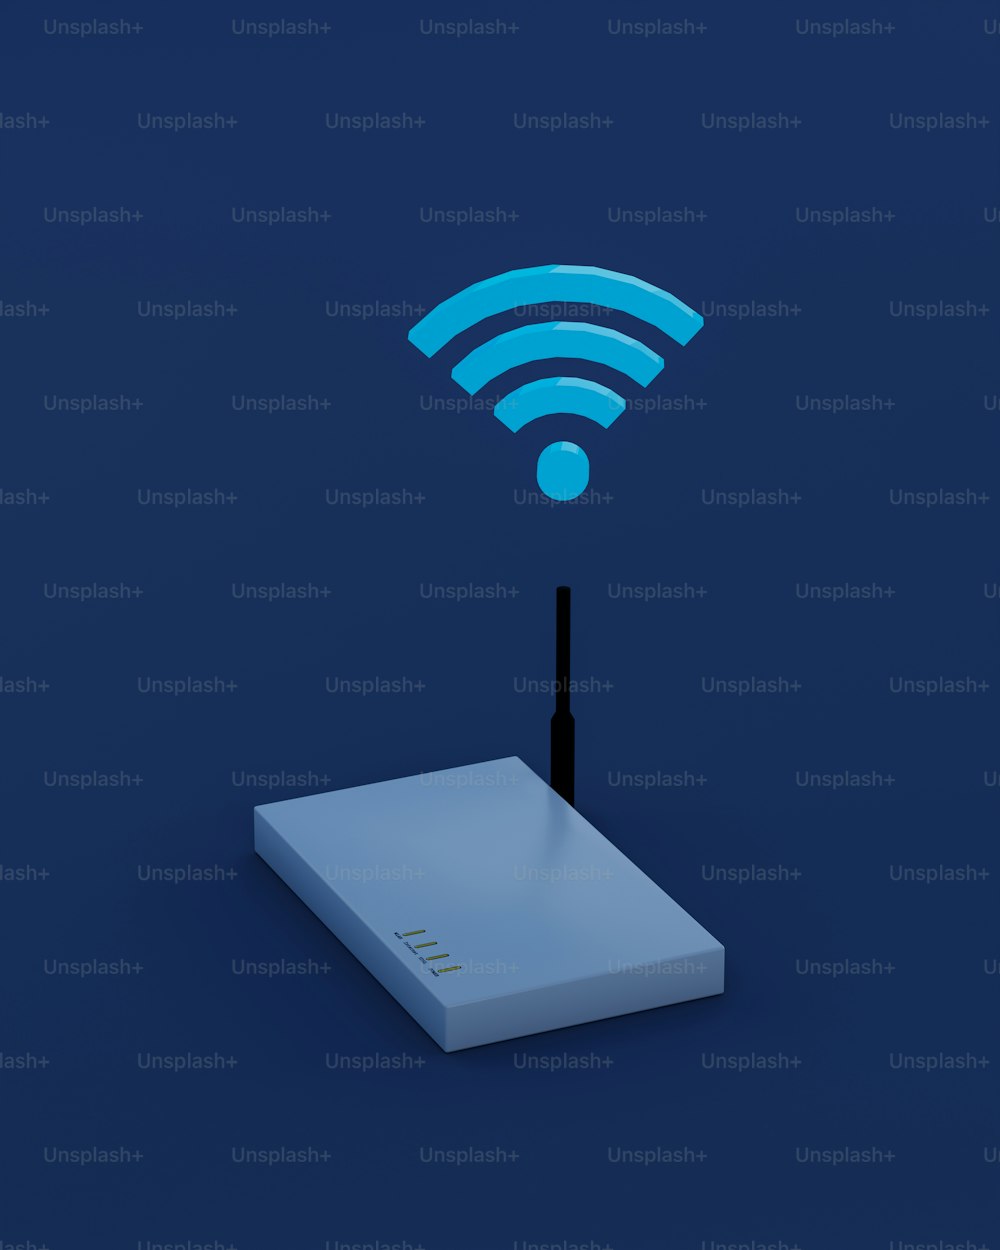 Un dispositivo inalámbrico con un símbolo WiFi en la parte superior